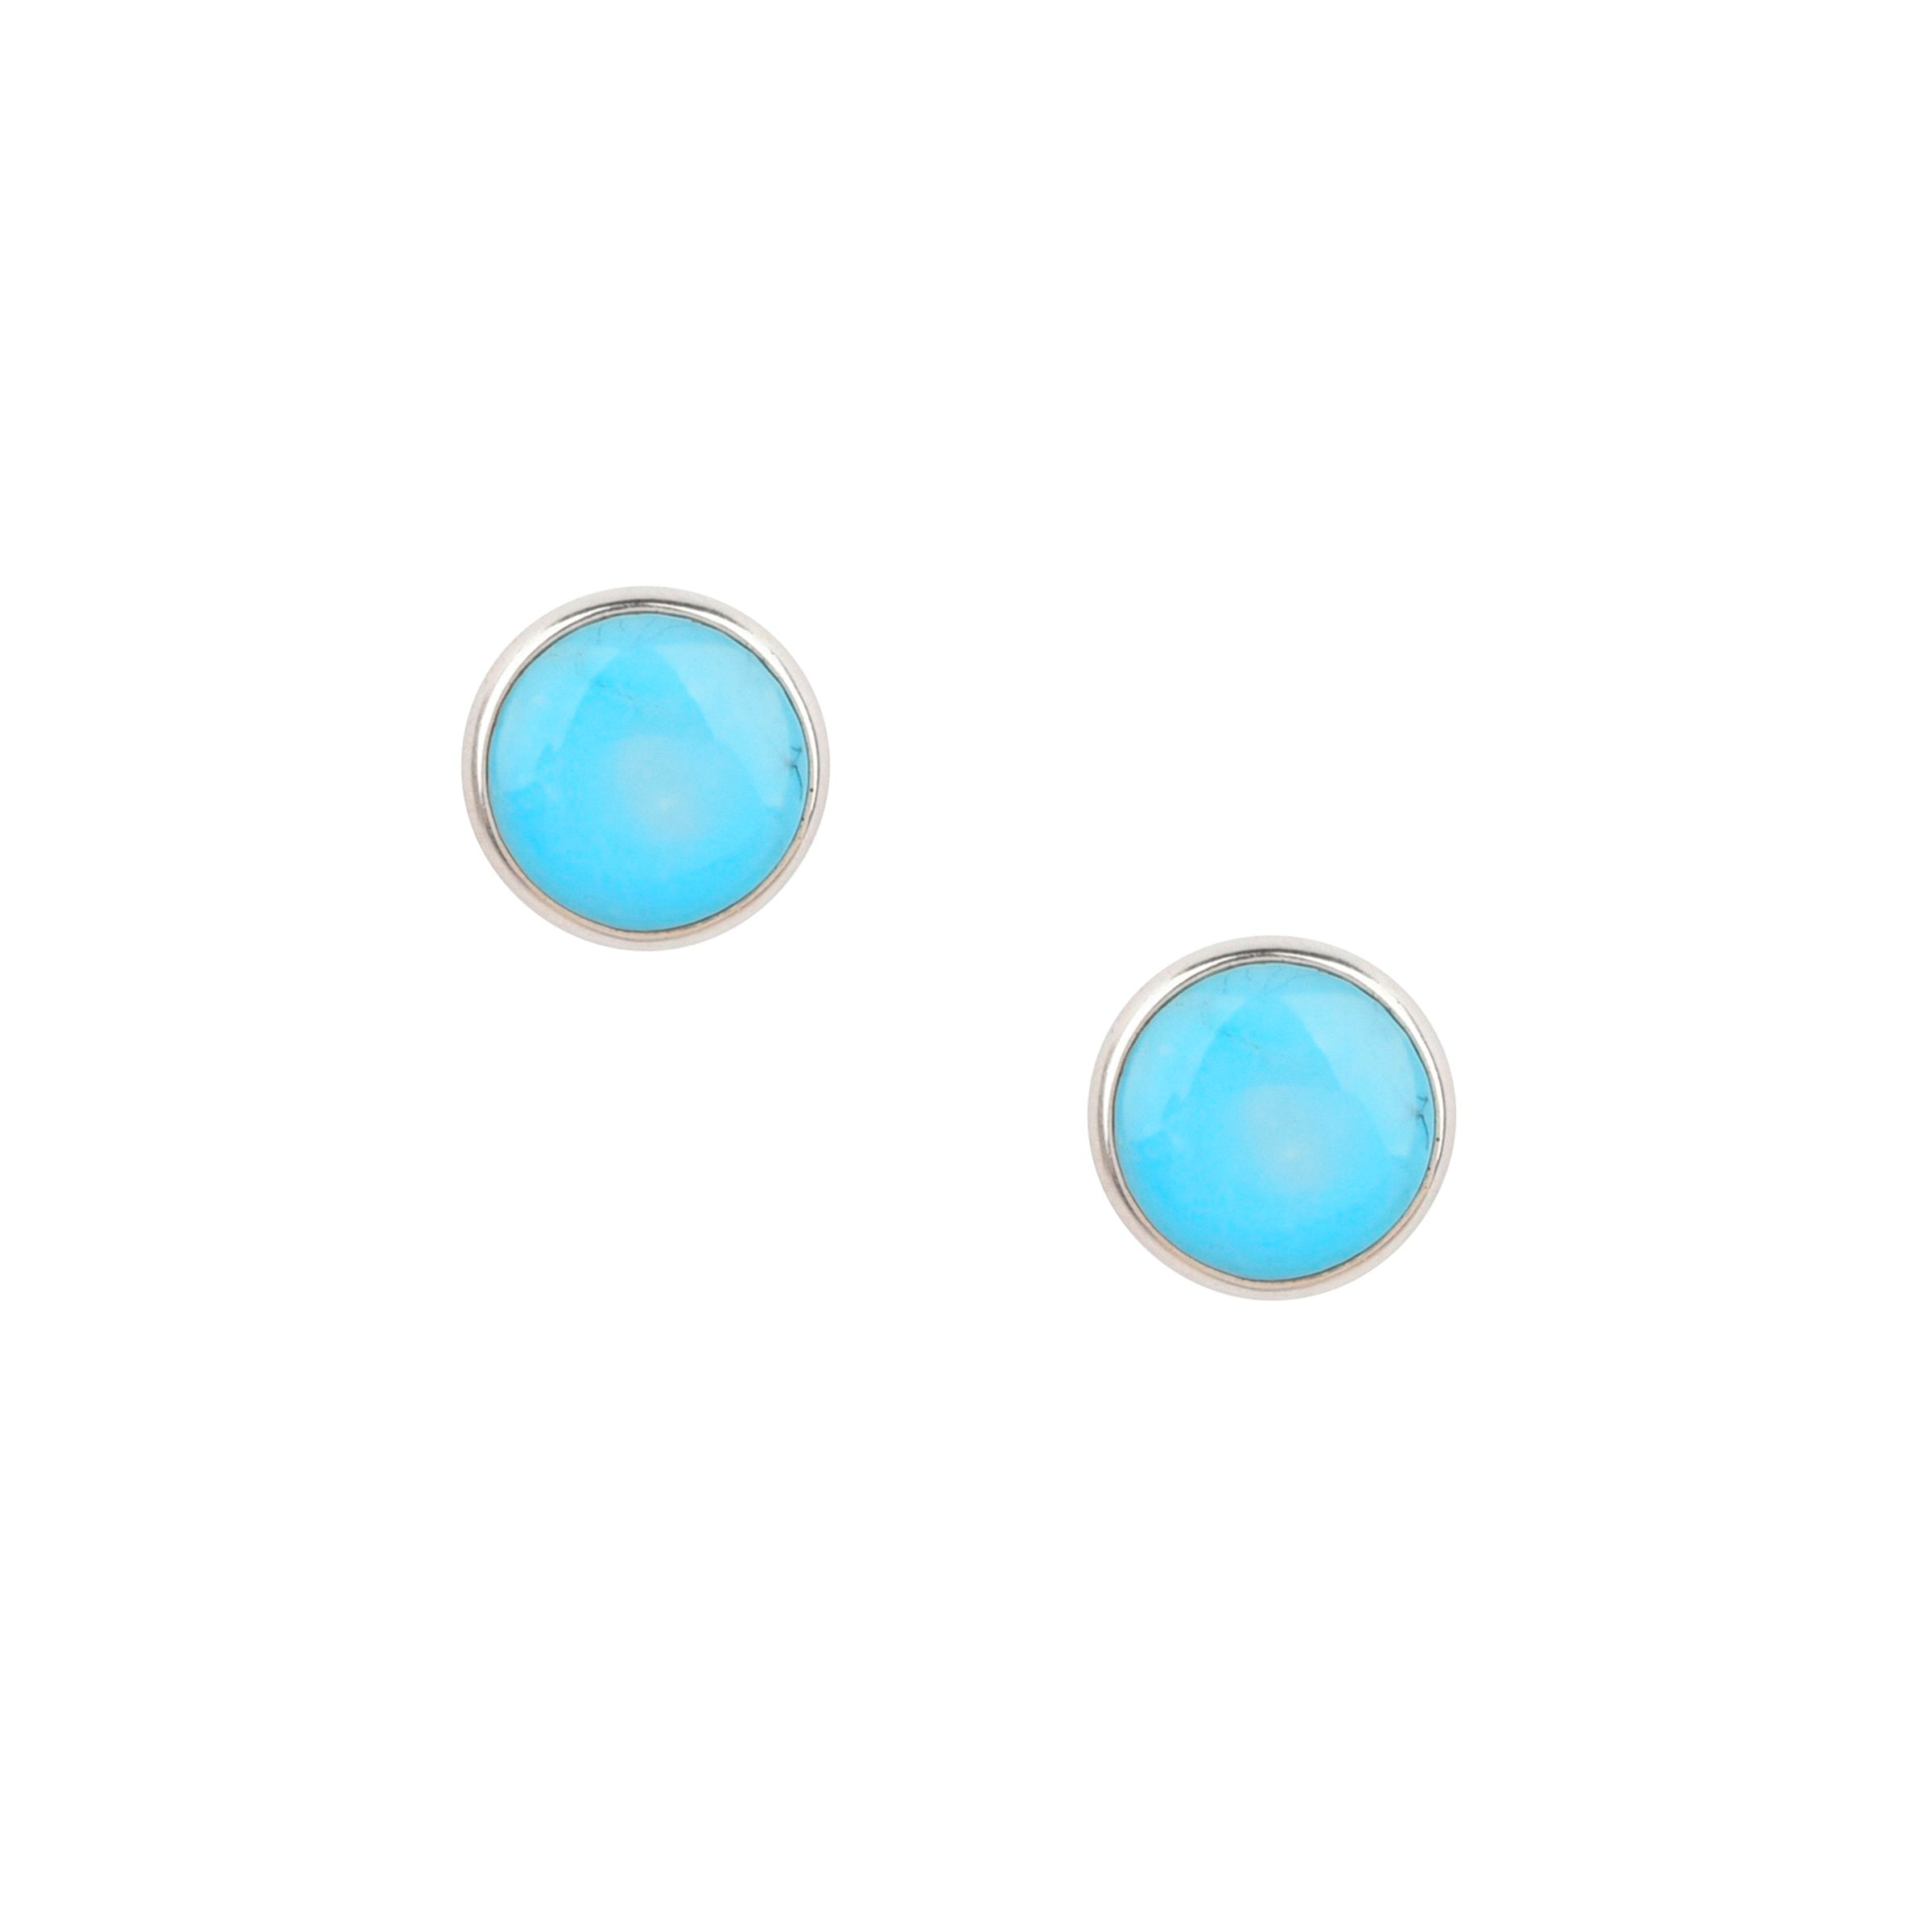 Dennis Hogan Full Moon Post Earrings - Turquoise